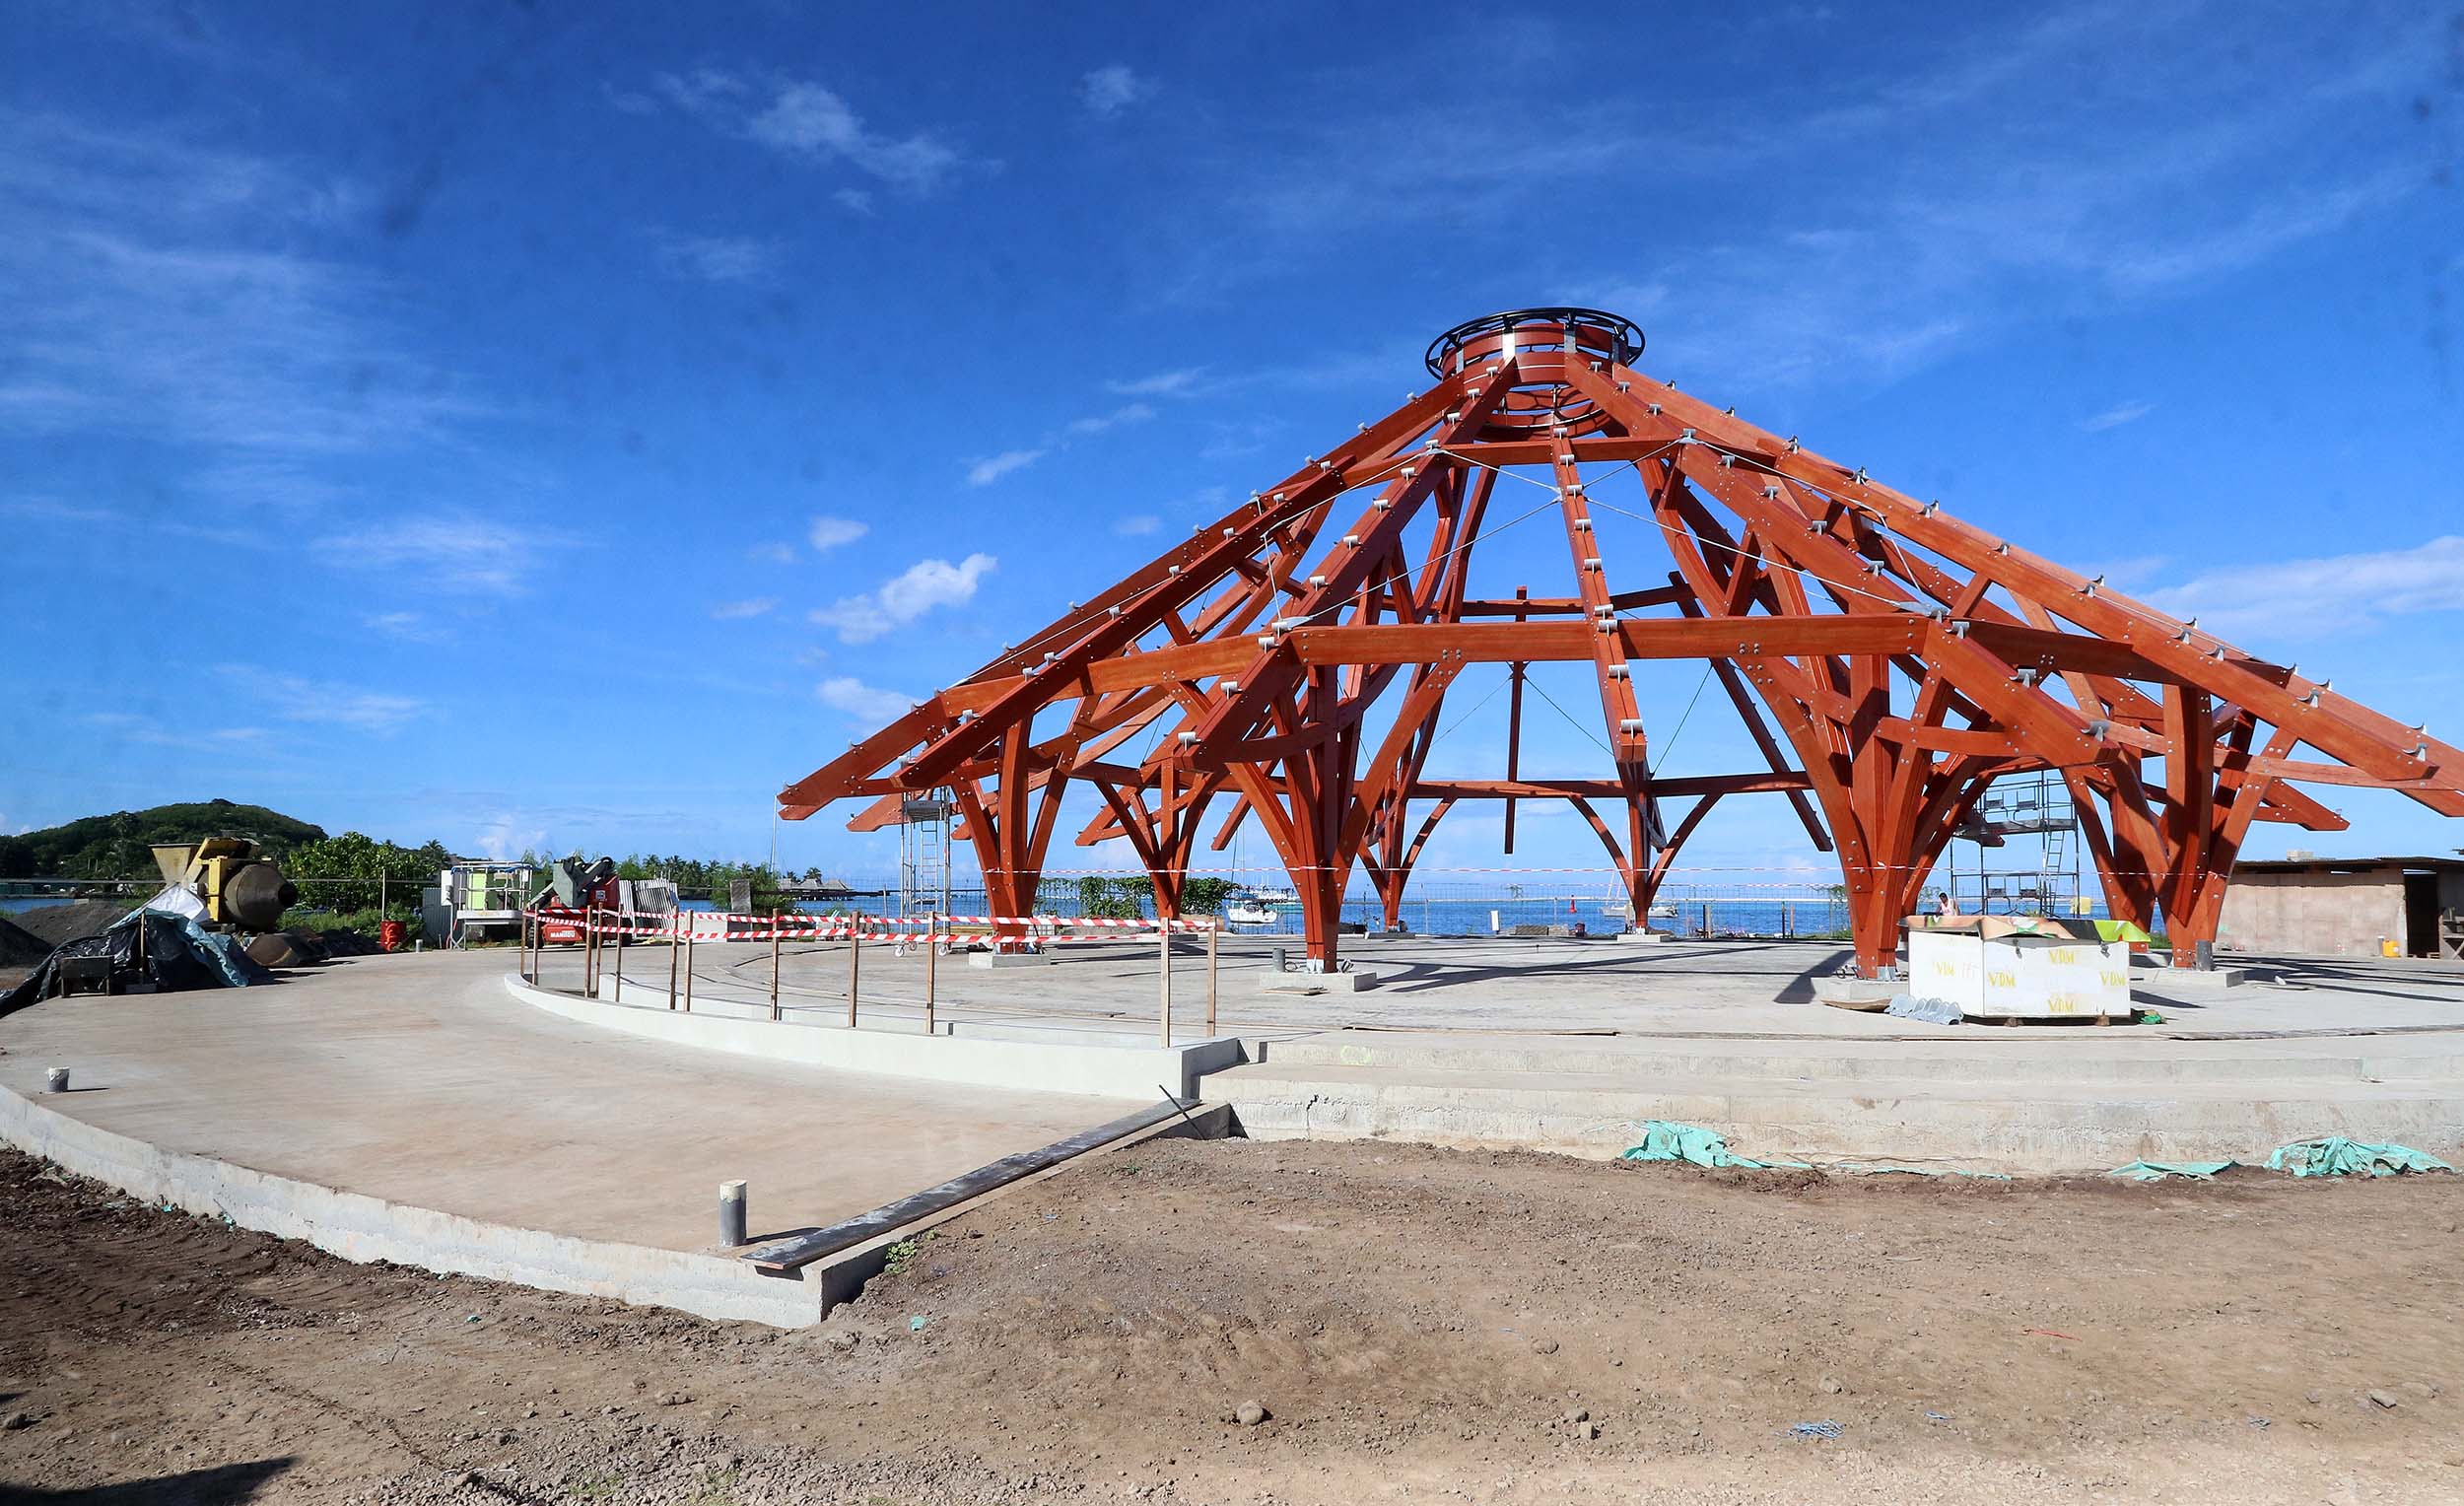 Les travaux d’aménagement ont débuté en octobre dernier par la construction du fare pōte'e. Ils devraient se poursuivre tout au long de l’année 2021 avec une livraison du site attendue pour le premier trimestre 2022.